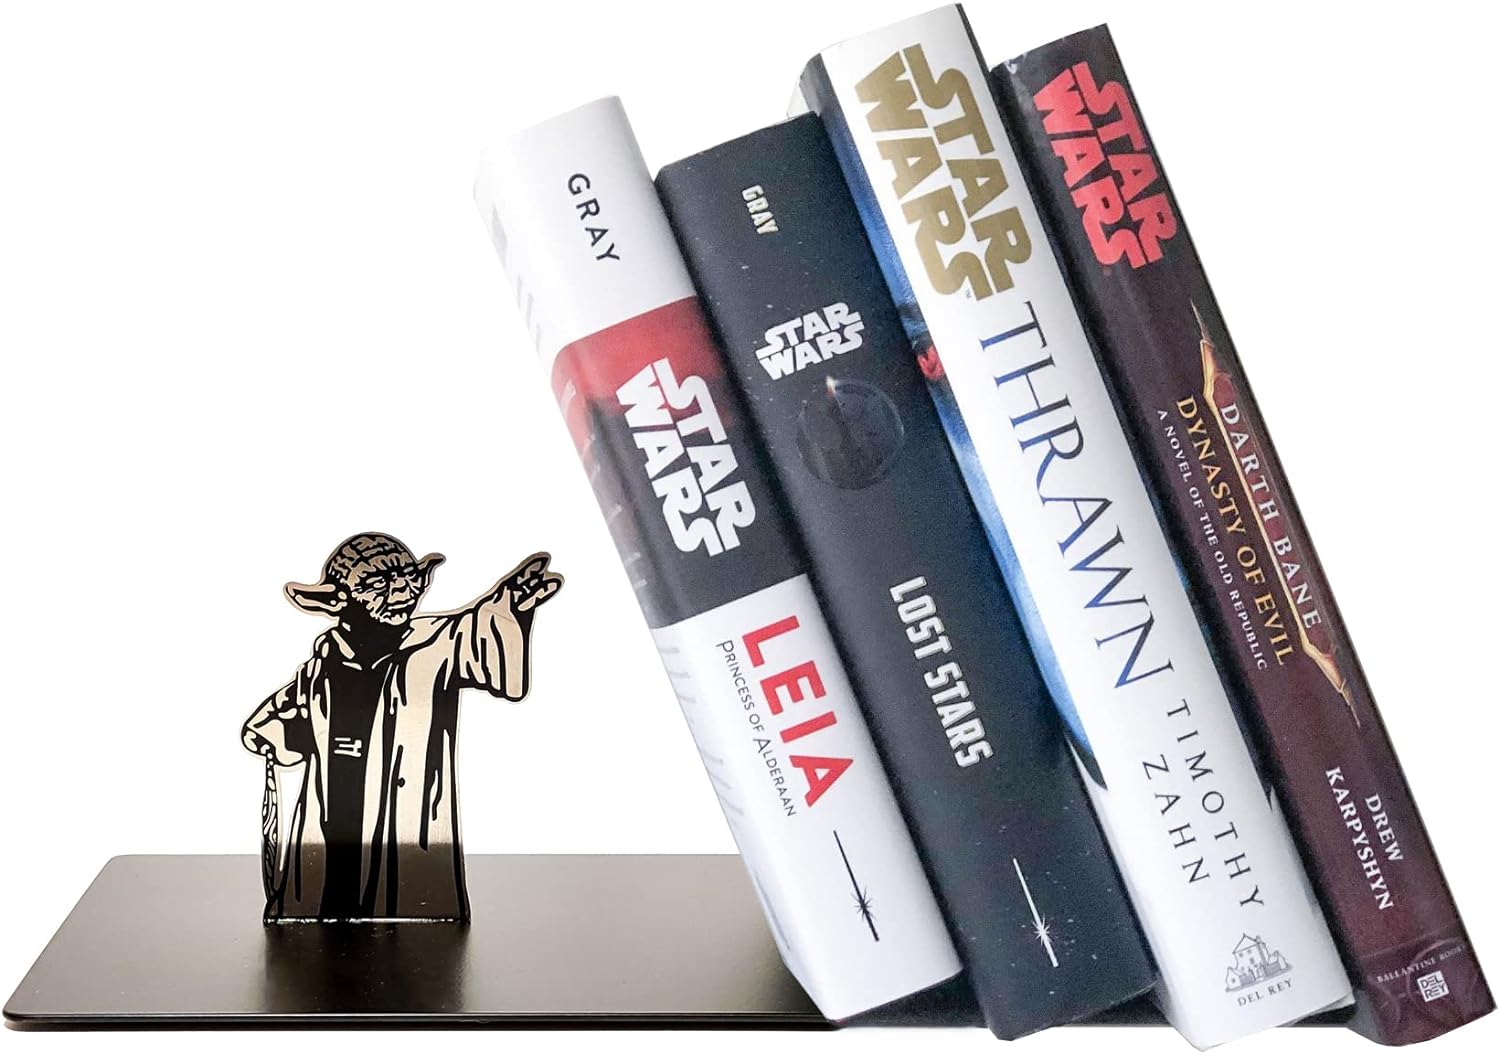 Serre-livres Yoda : L’Équilibre de la Force pour Vos Livres !